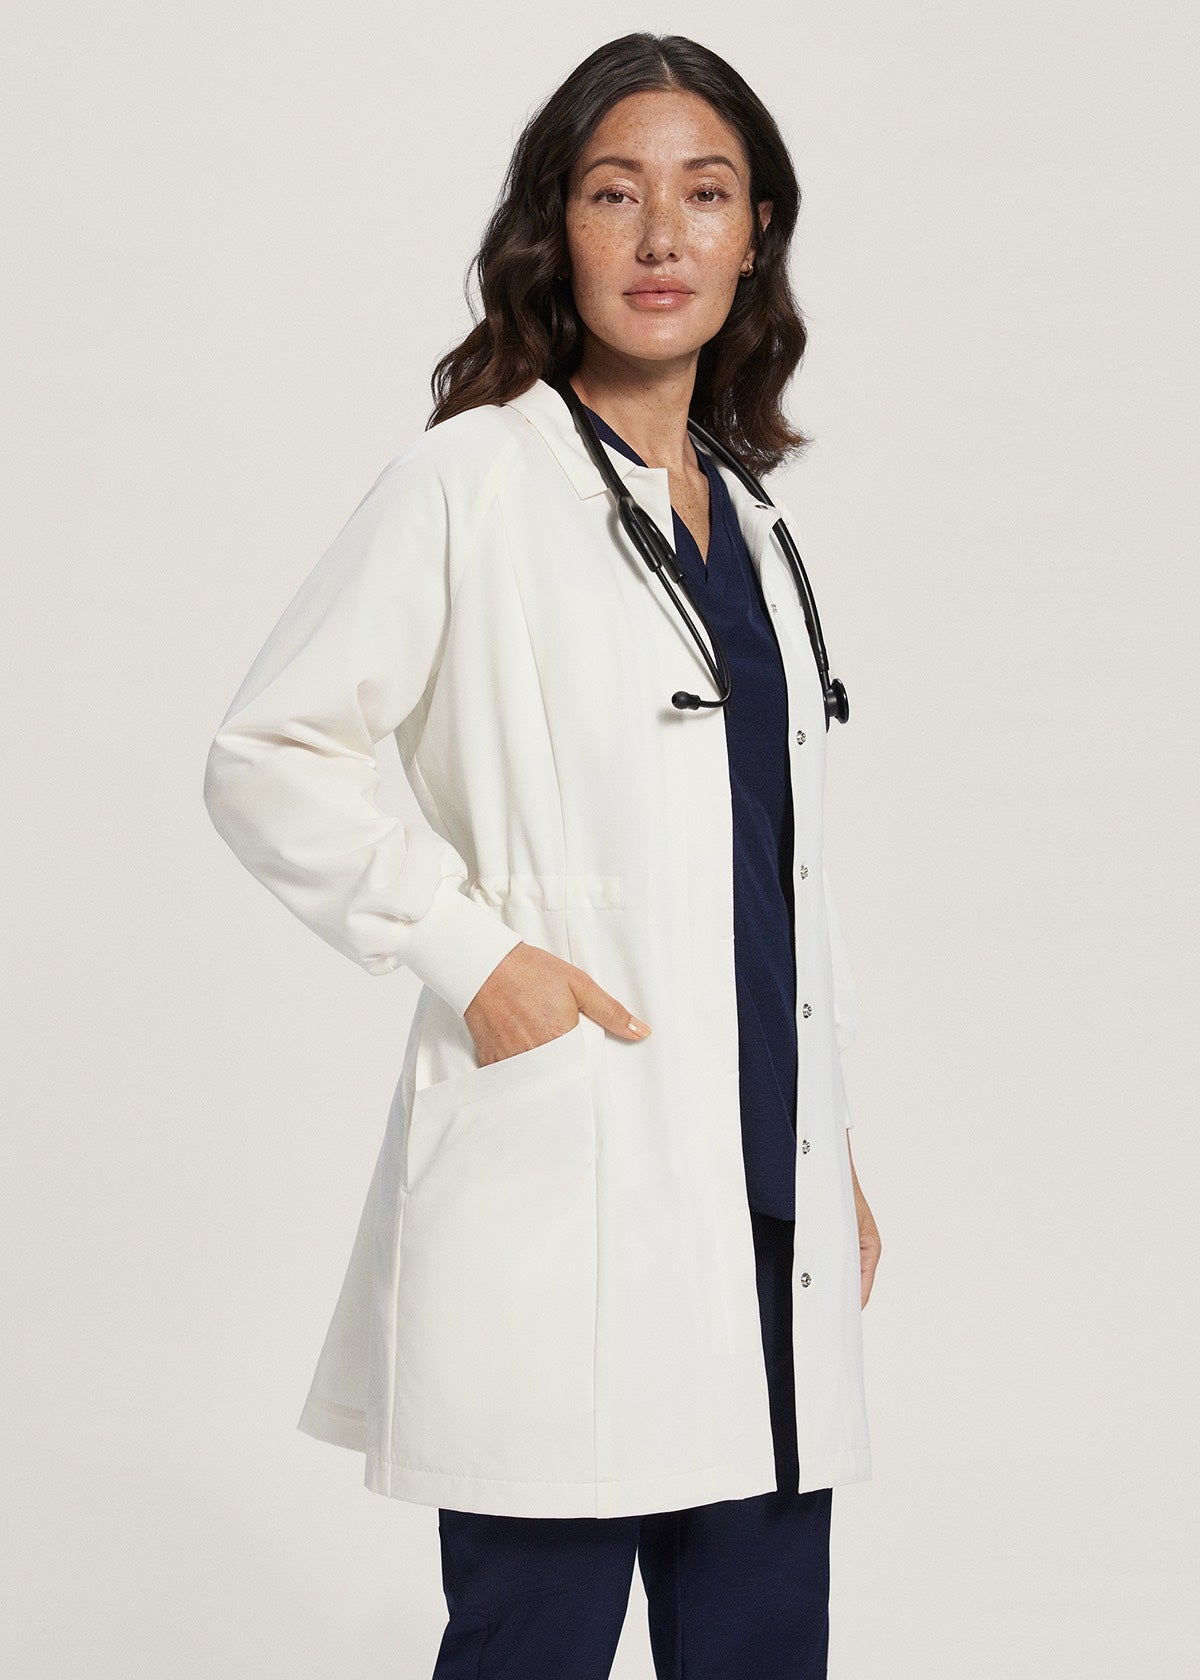 Women's Lab Coat